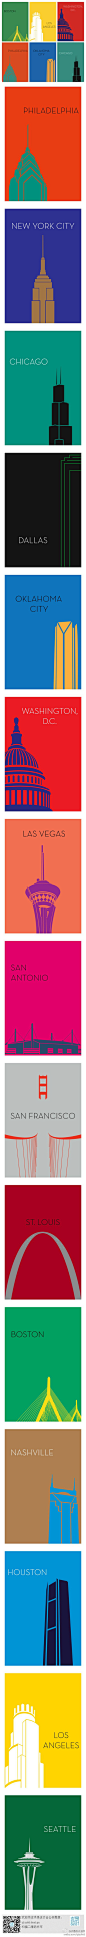 城市极简明信片设计。平面设计师Ryan M. Russell设计了一套色彩明亮的极简城市明信片系列。